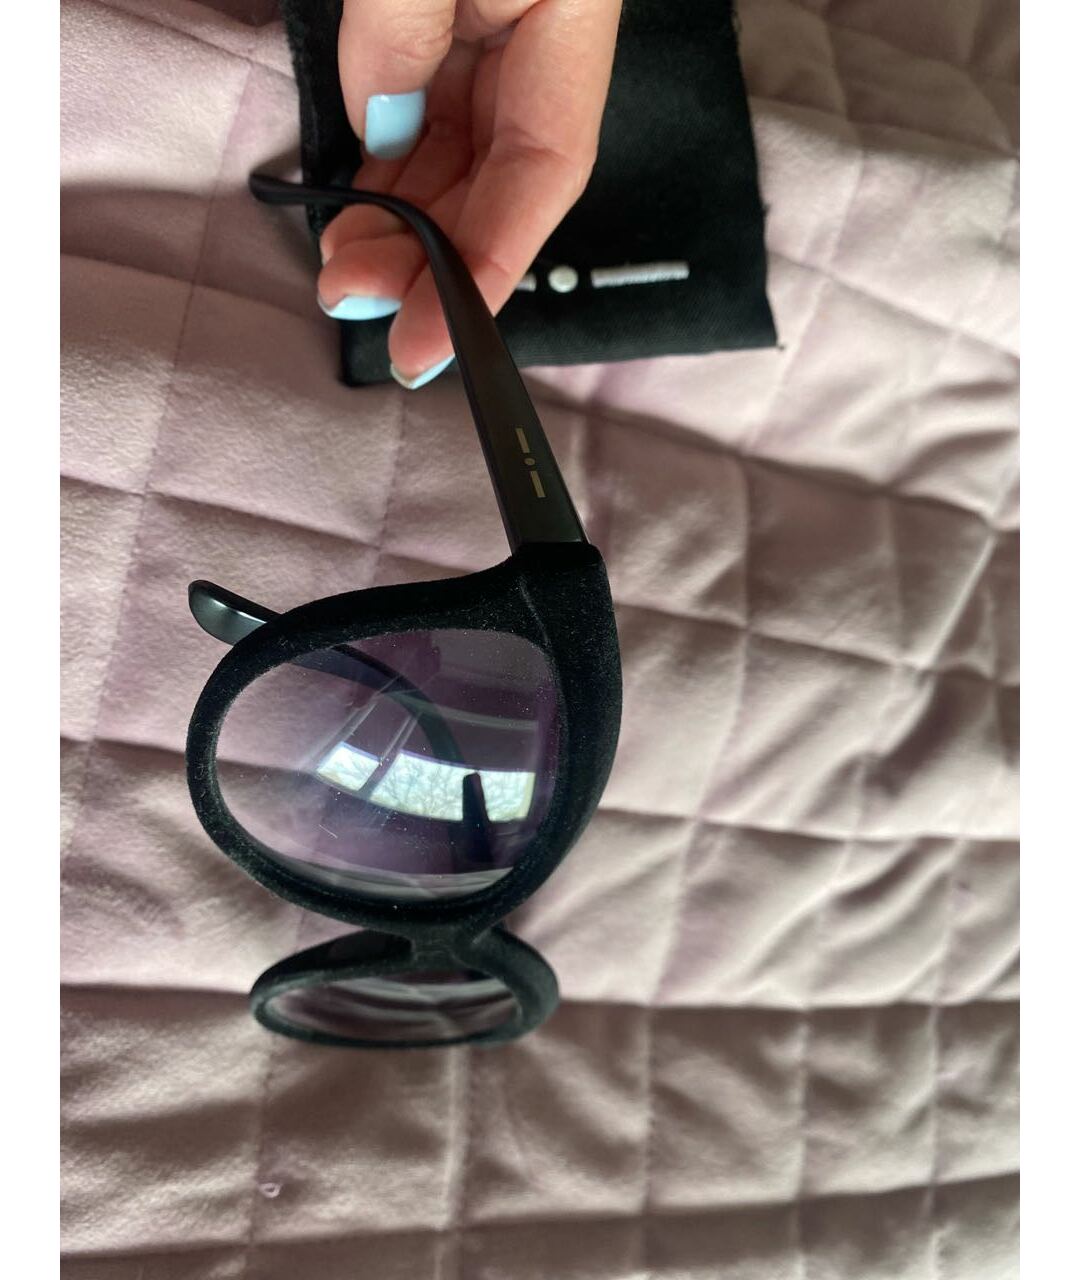 ITALIA INDEPENDENT Черные пластиковые солнцезащитные очки, фото 3